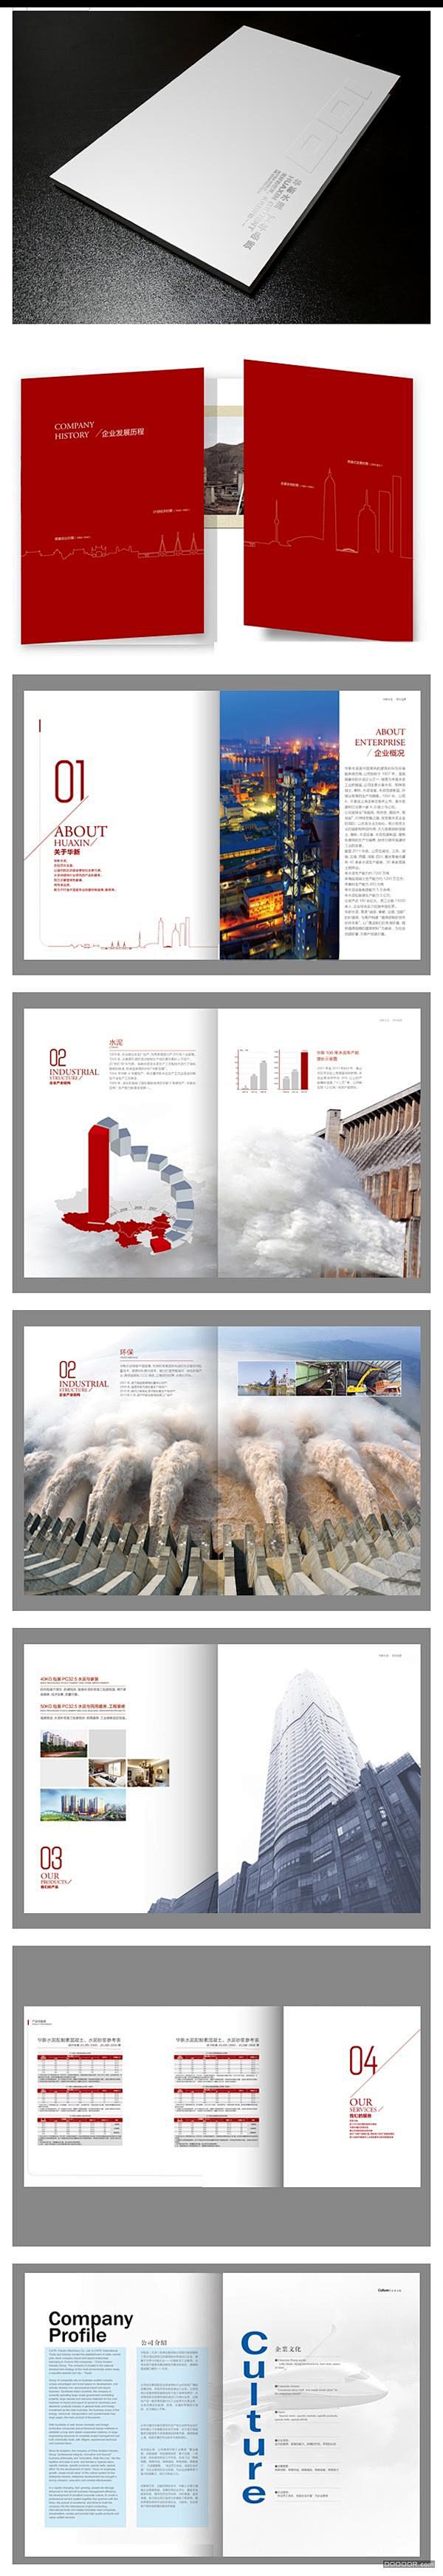 国内优秀企业宣传册与折页设计 - 中国平...